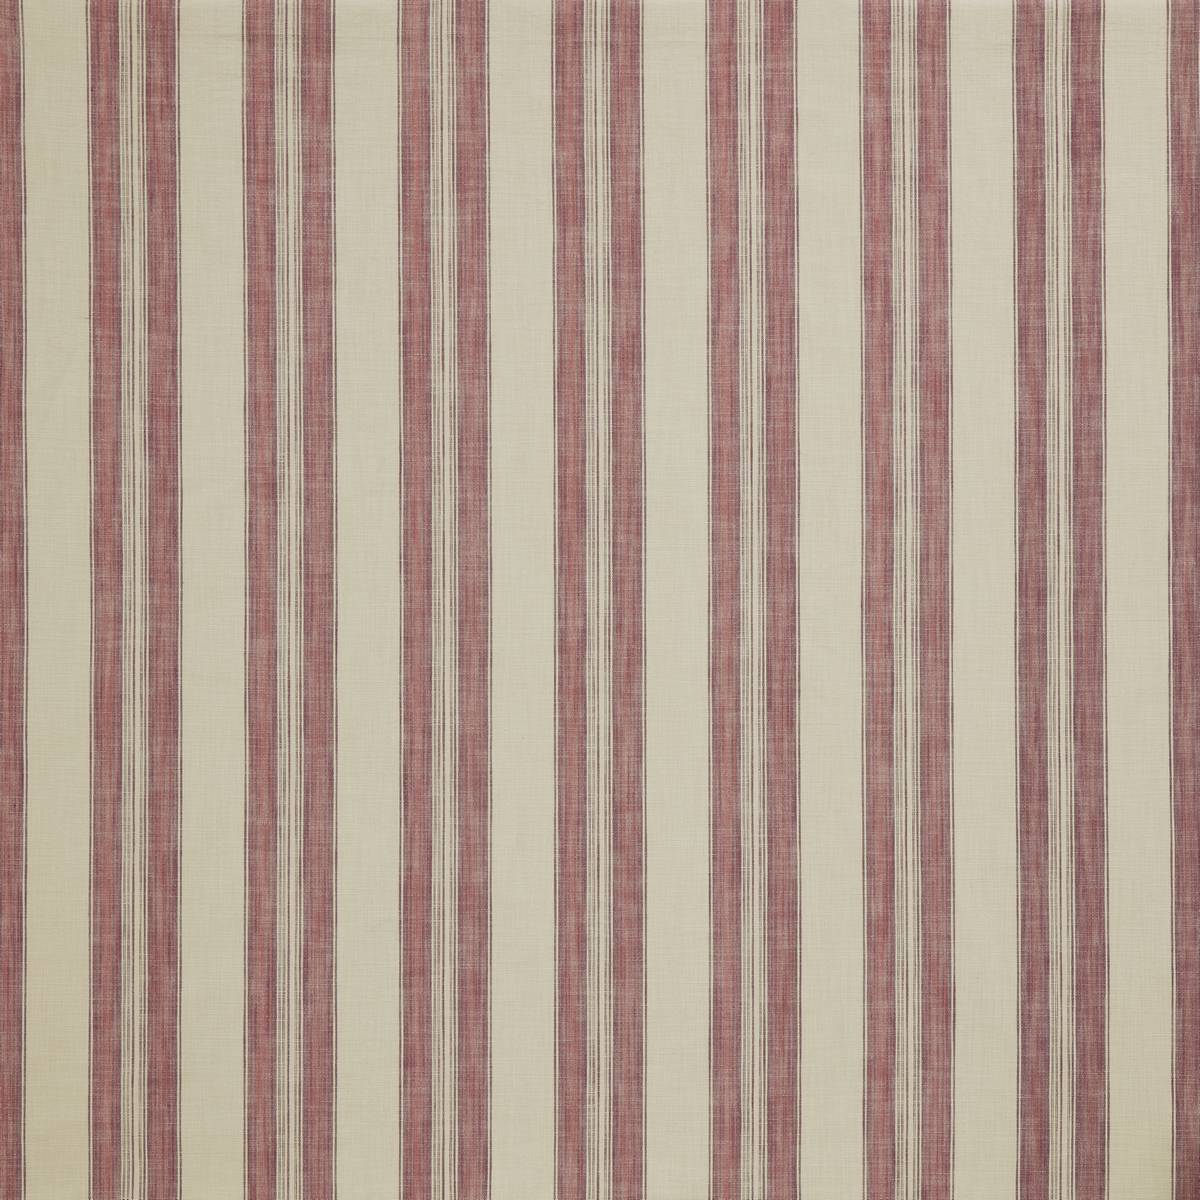 Barley Stripe Rosella Fabric by iLiv